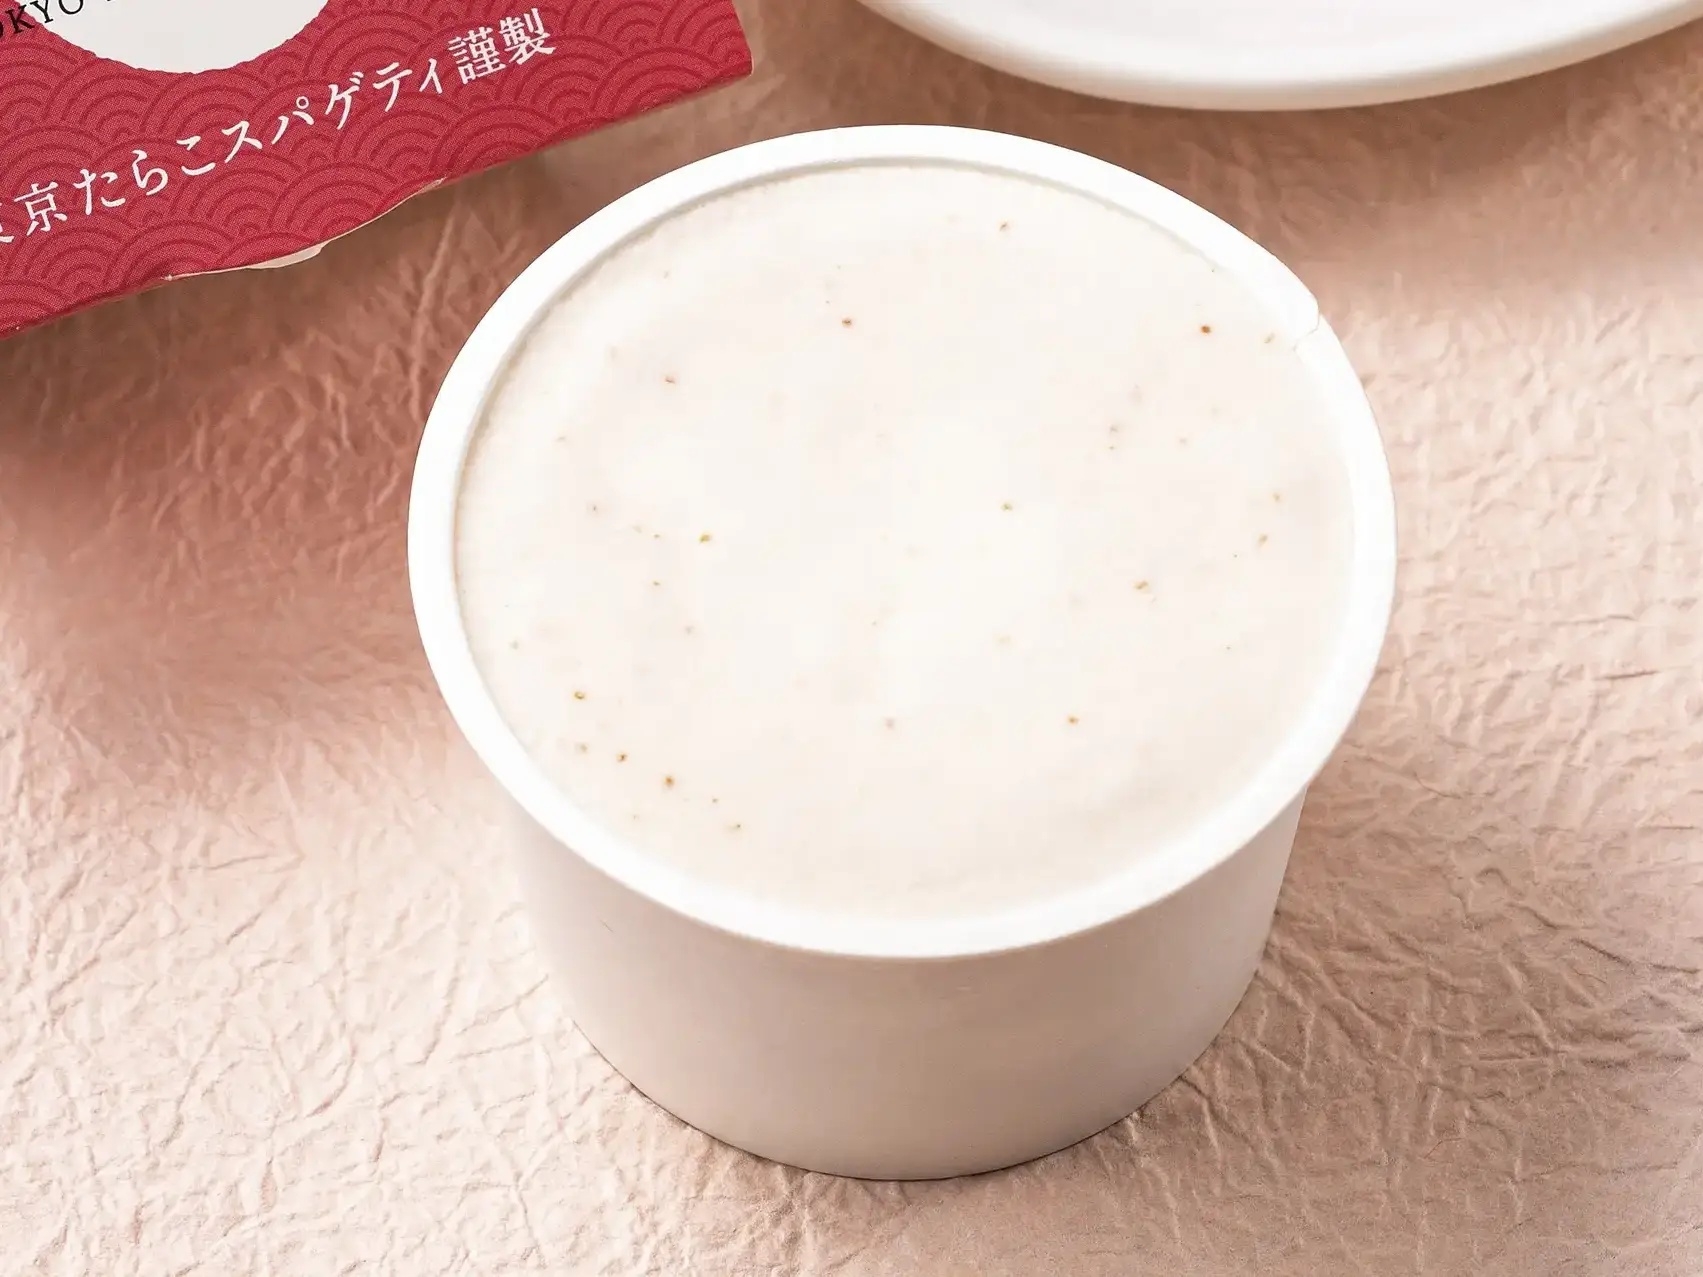 日本義大利麵店推出超衝擊甜點「明太子牛奶冰」，這確定不是暗黑料理嗎？